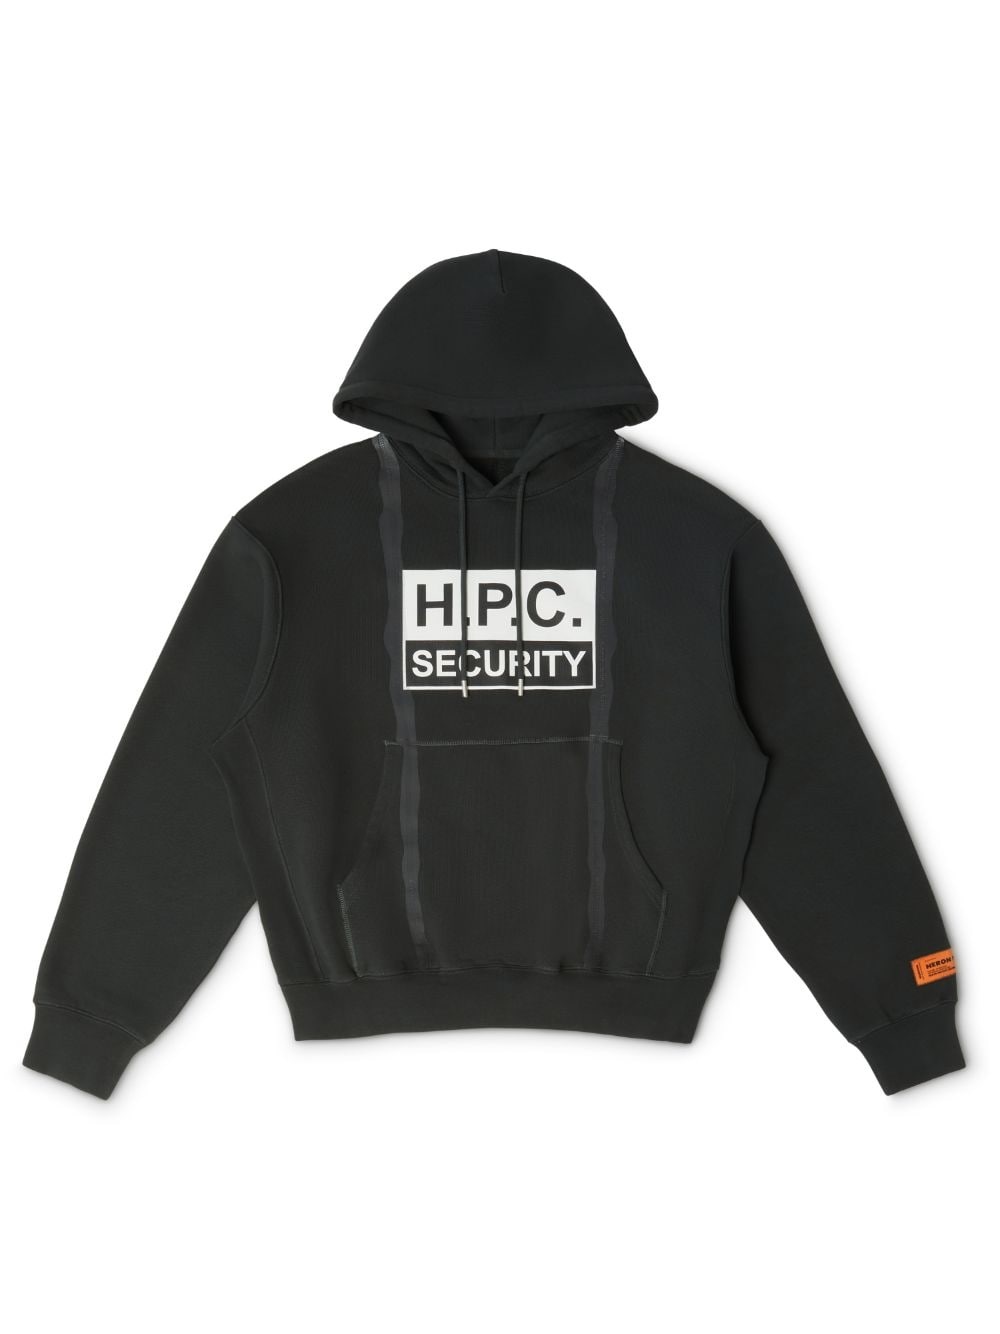 H.P.C Security Tape Hoodie - 1